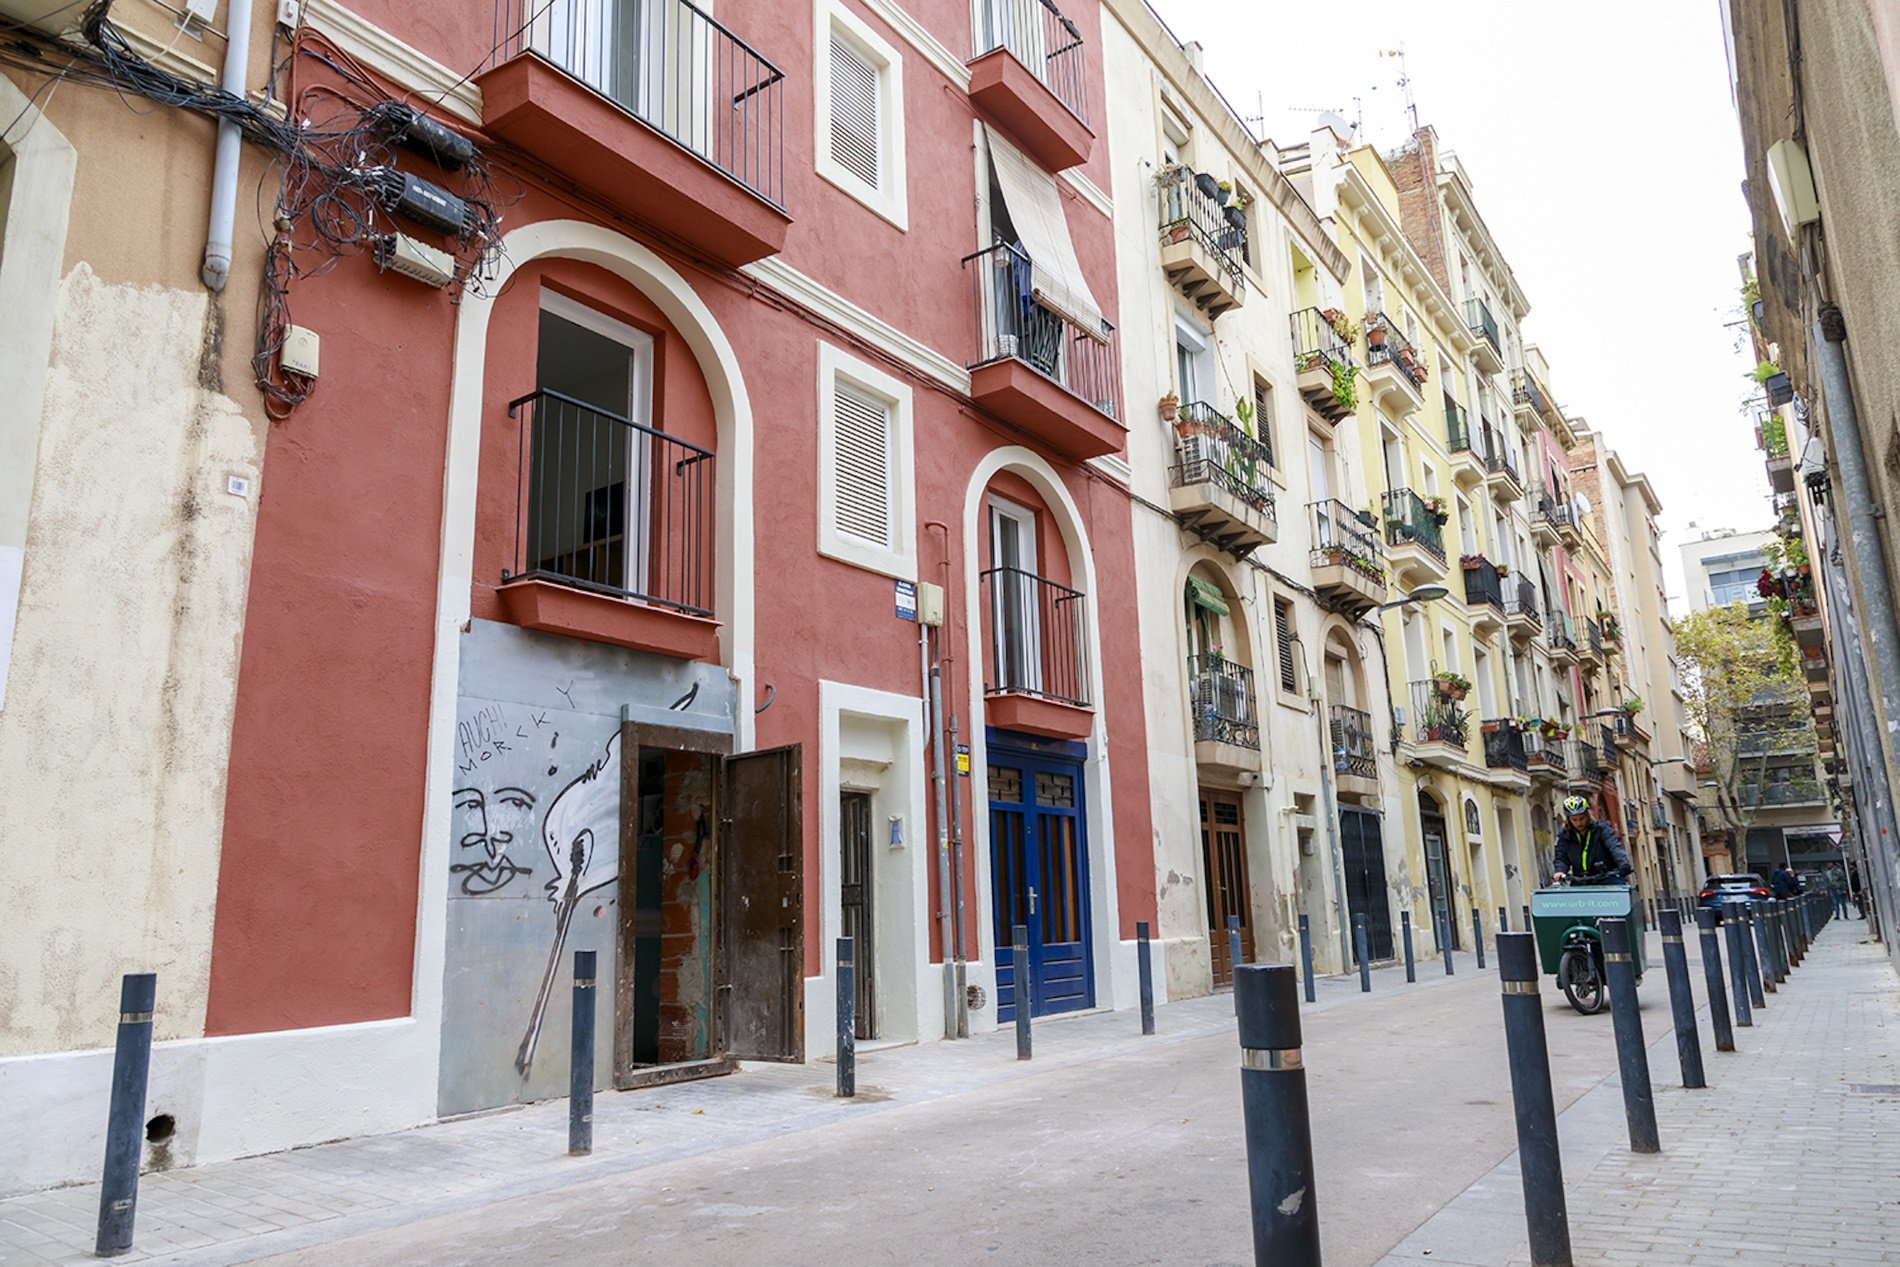 La meitat de les persones sense sostre a Barcelona fa menys de cinc anys que hi resideix